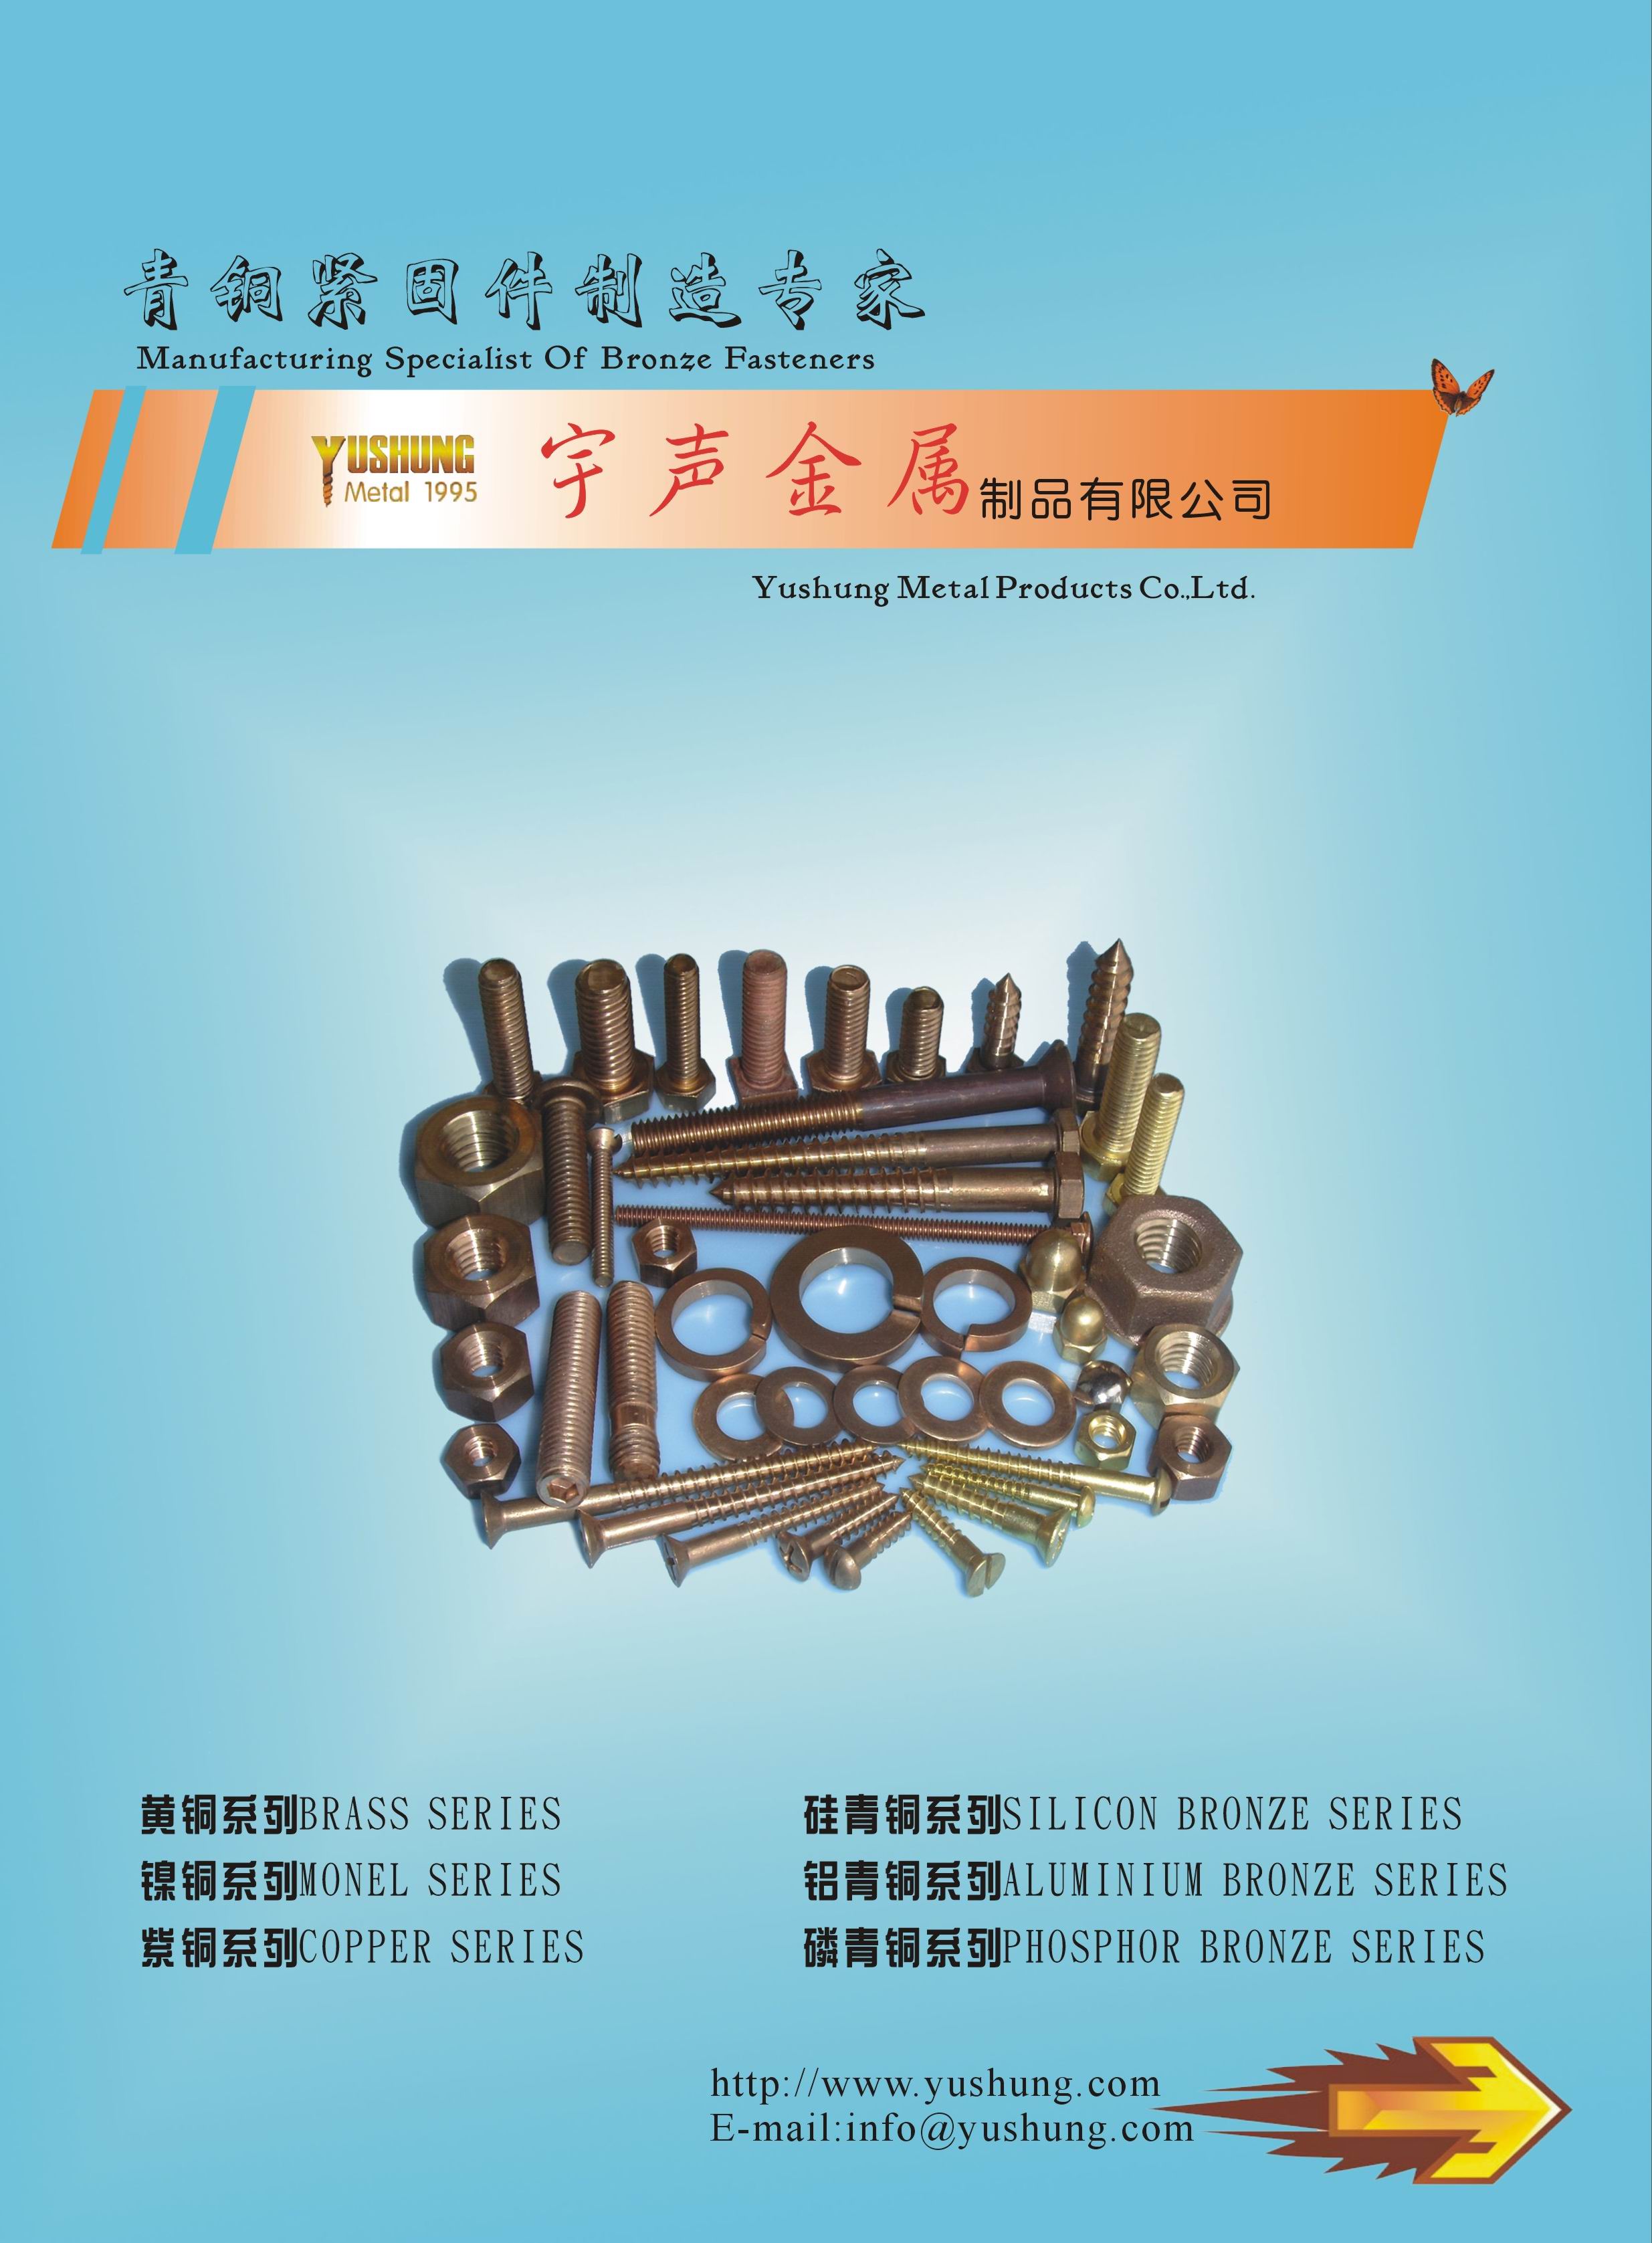 Chongqing Yushung Non-Ferrous Metals Co., Ltd._Online Catalogues